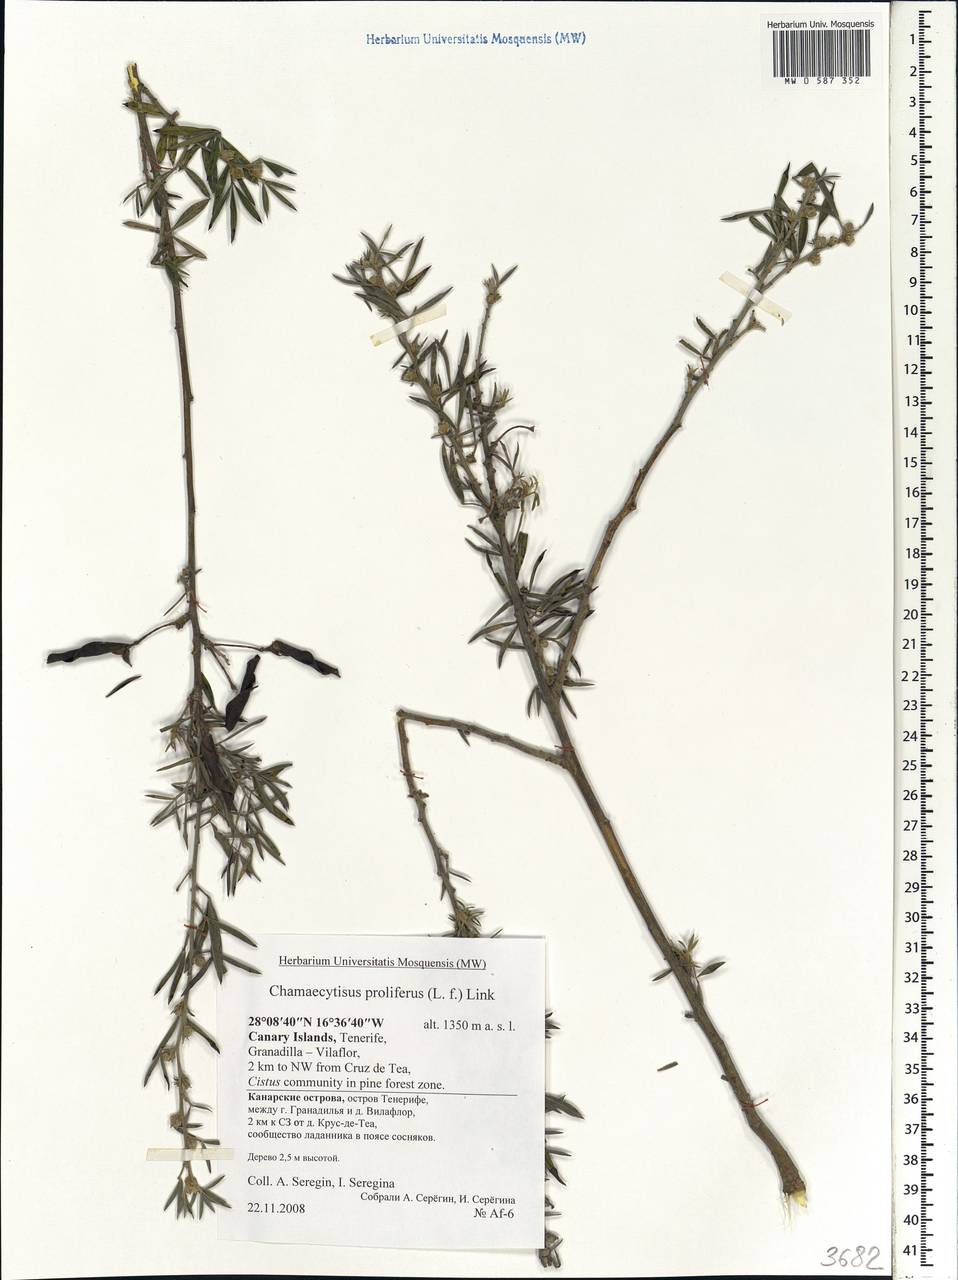 Cytisus proliferus L.f., Africa (AFR) (Spain)